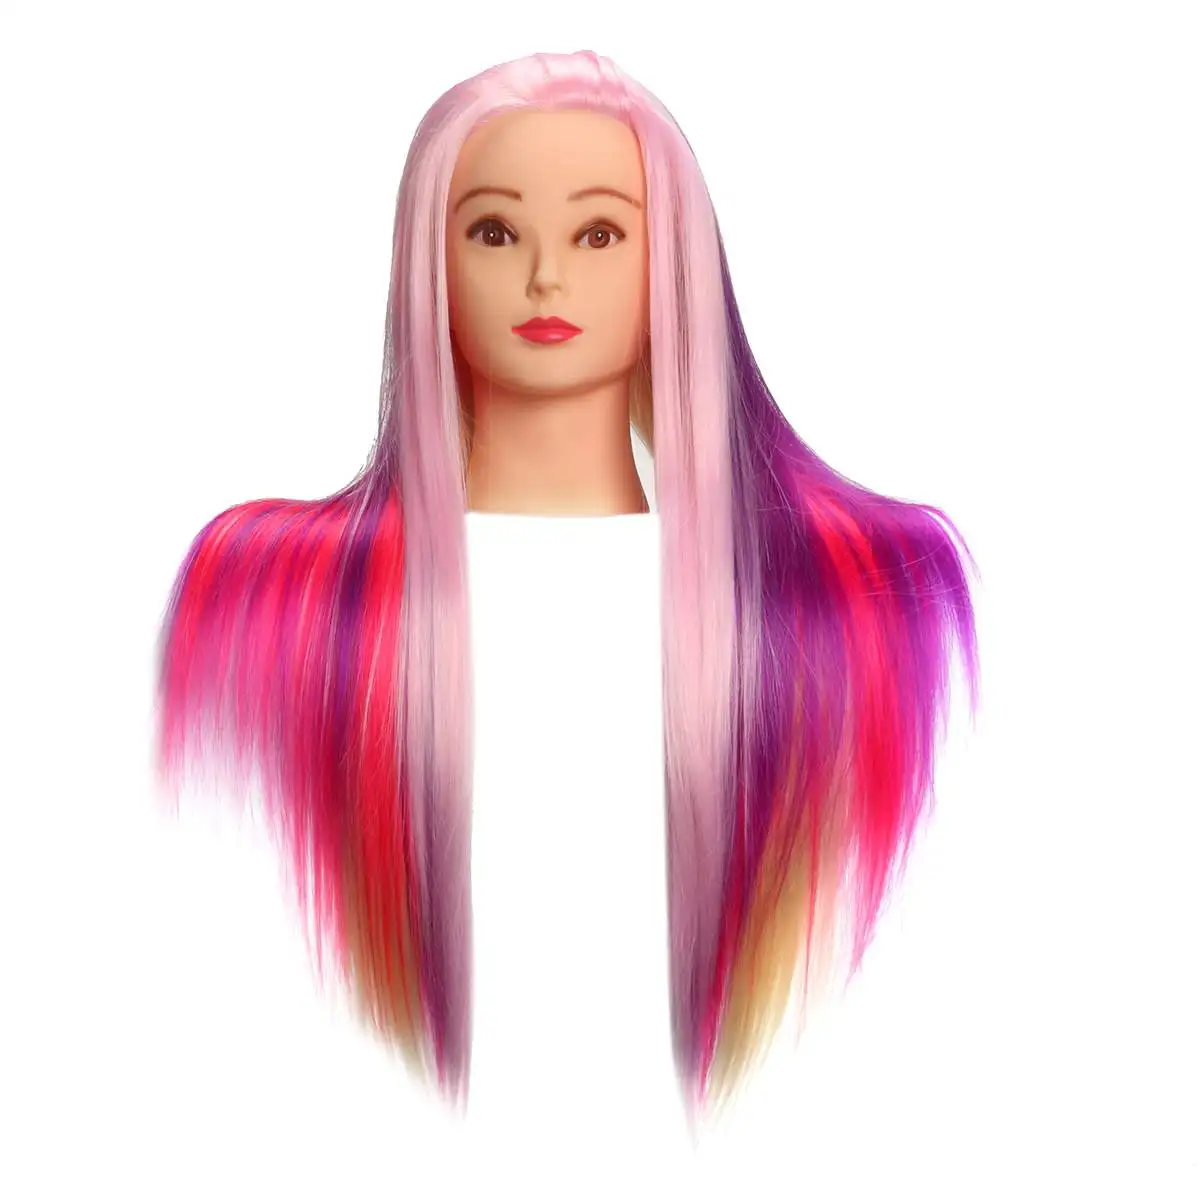 2" фиолетовый и розовый профессиональный салон Практика голова красочные высокой температуры волокна волос Модель парикмахерские манекены